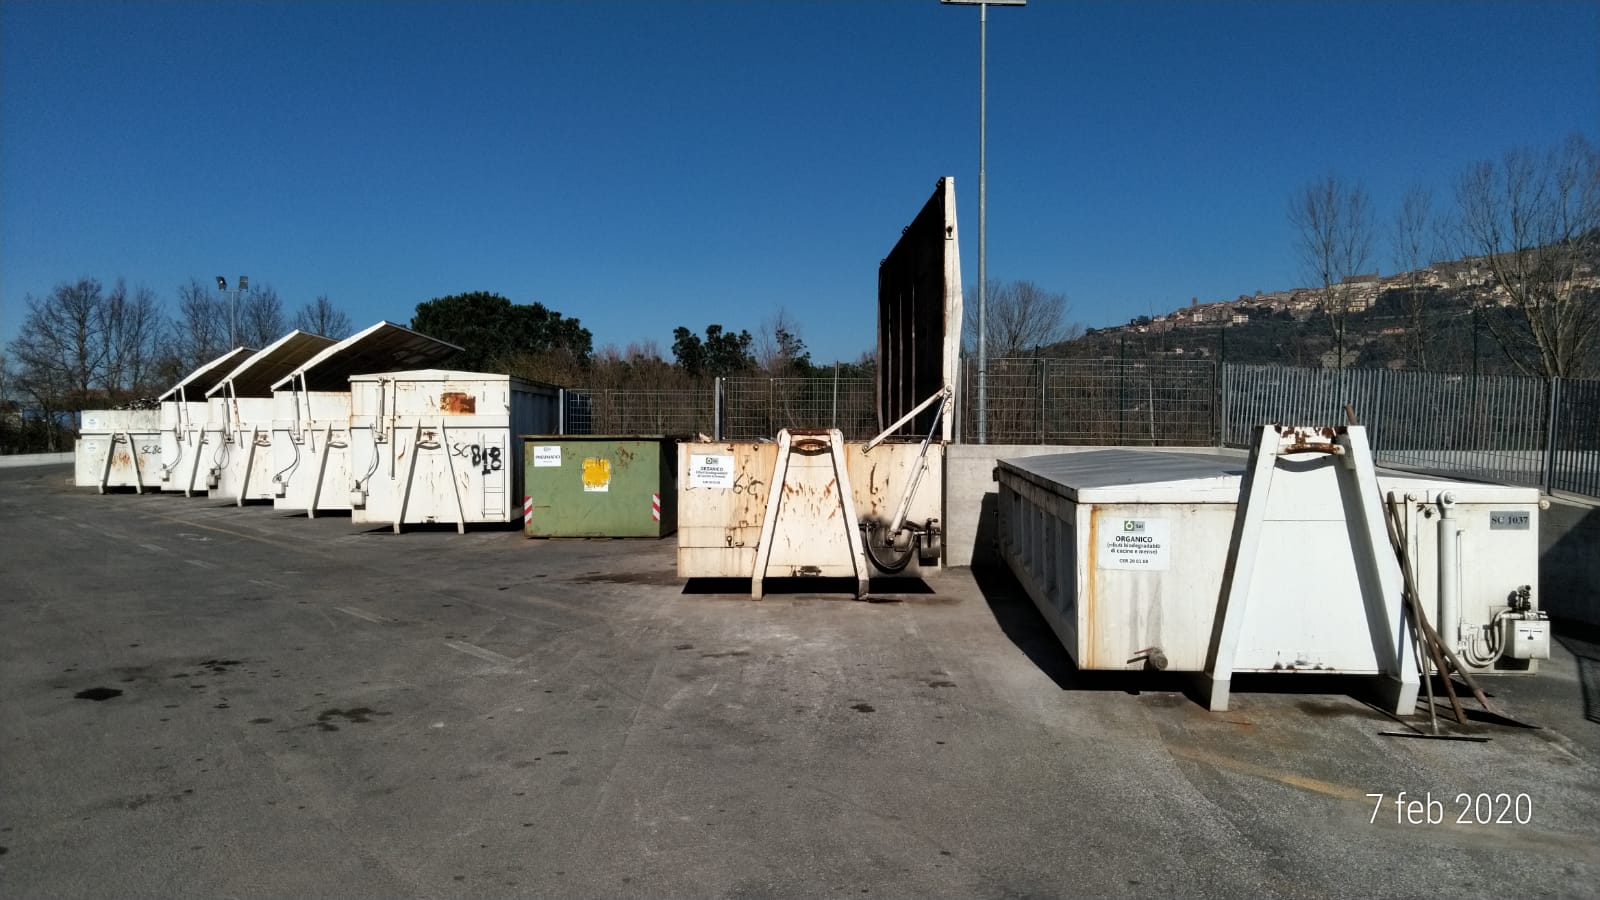 Centro raccolta rifiuti Biricocco, aumentano gli accessi anche a febbraio